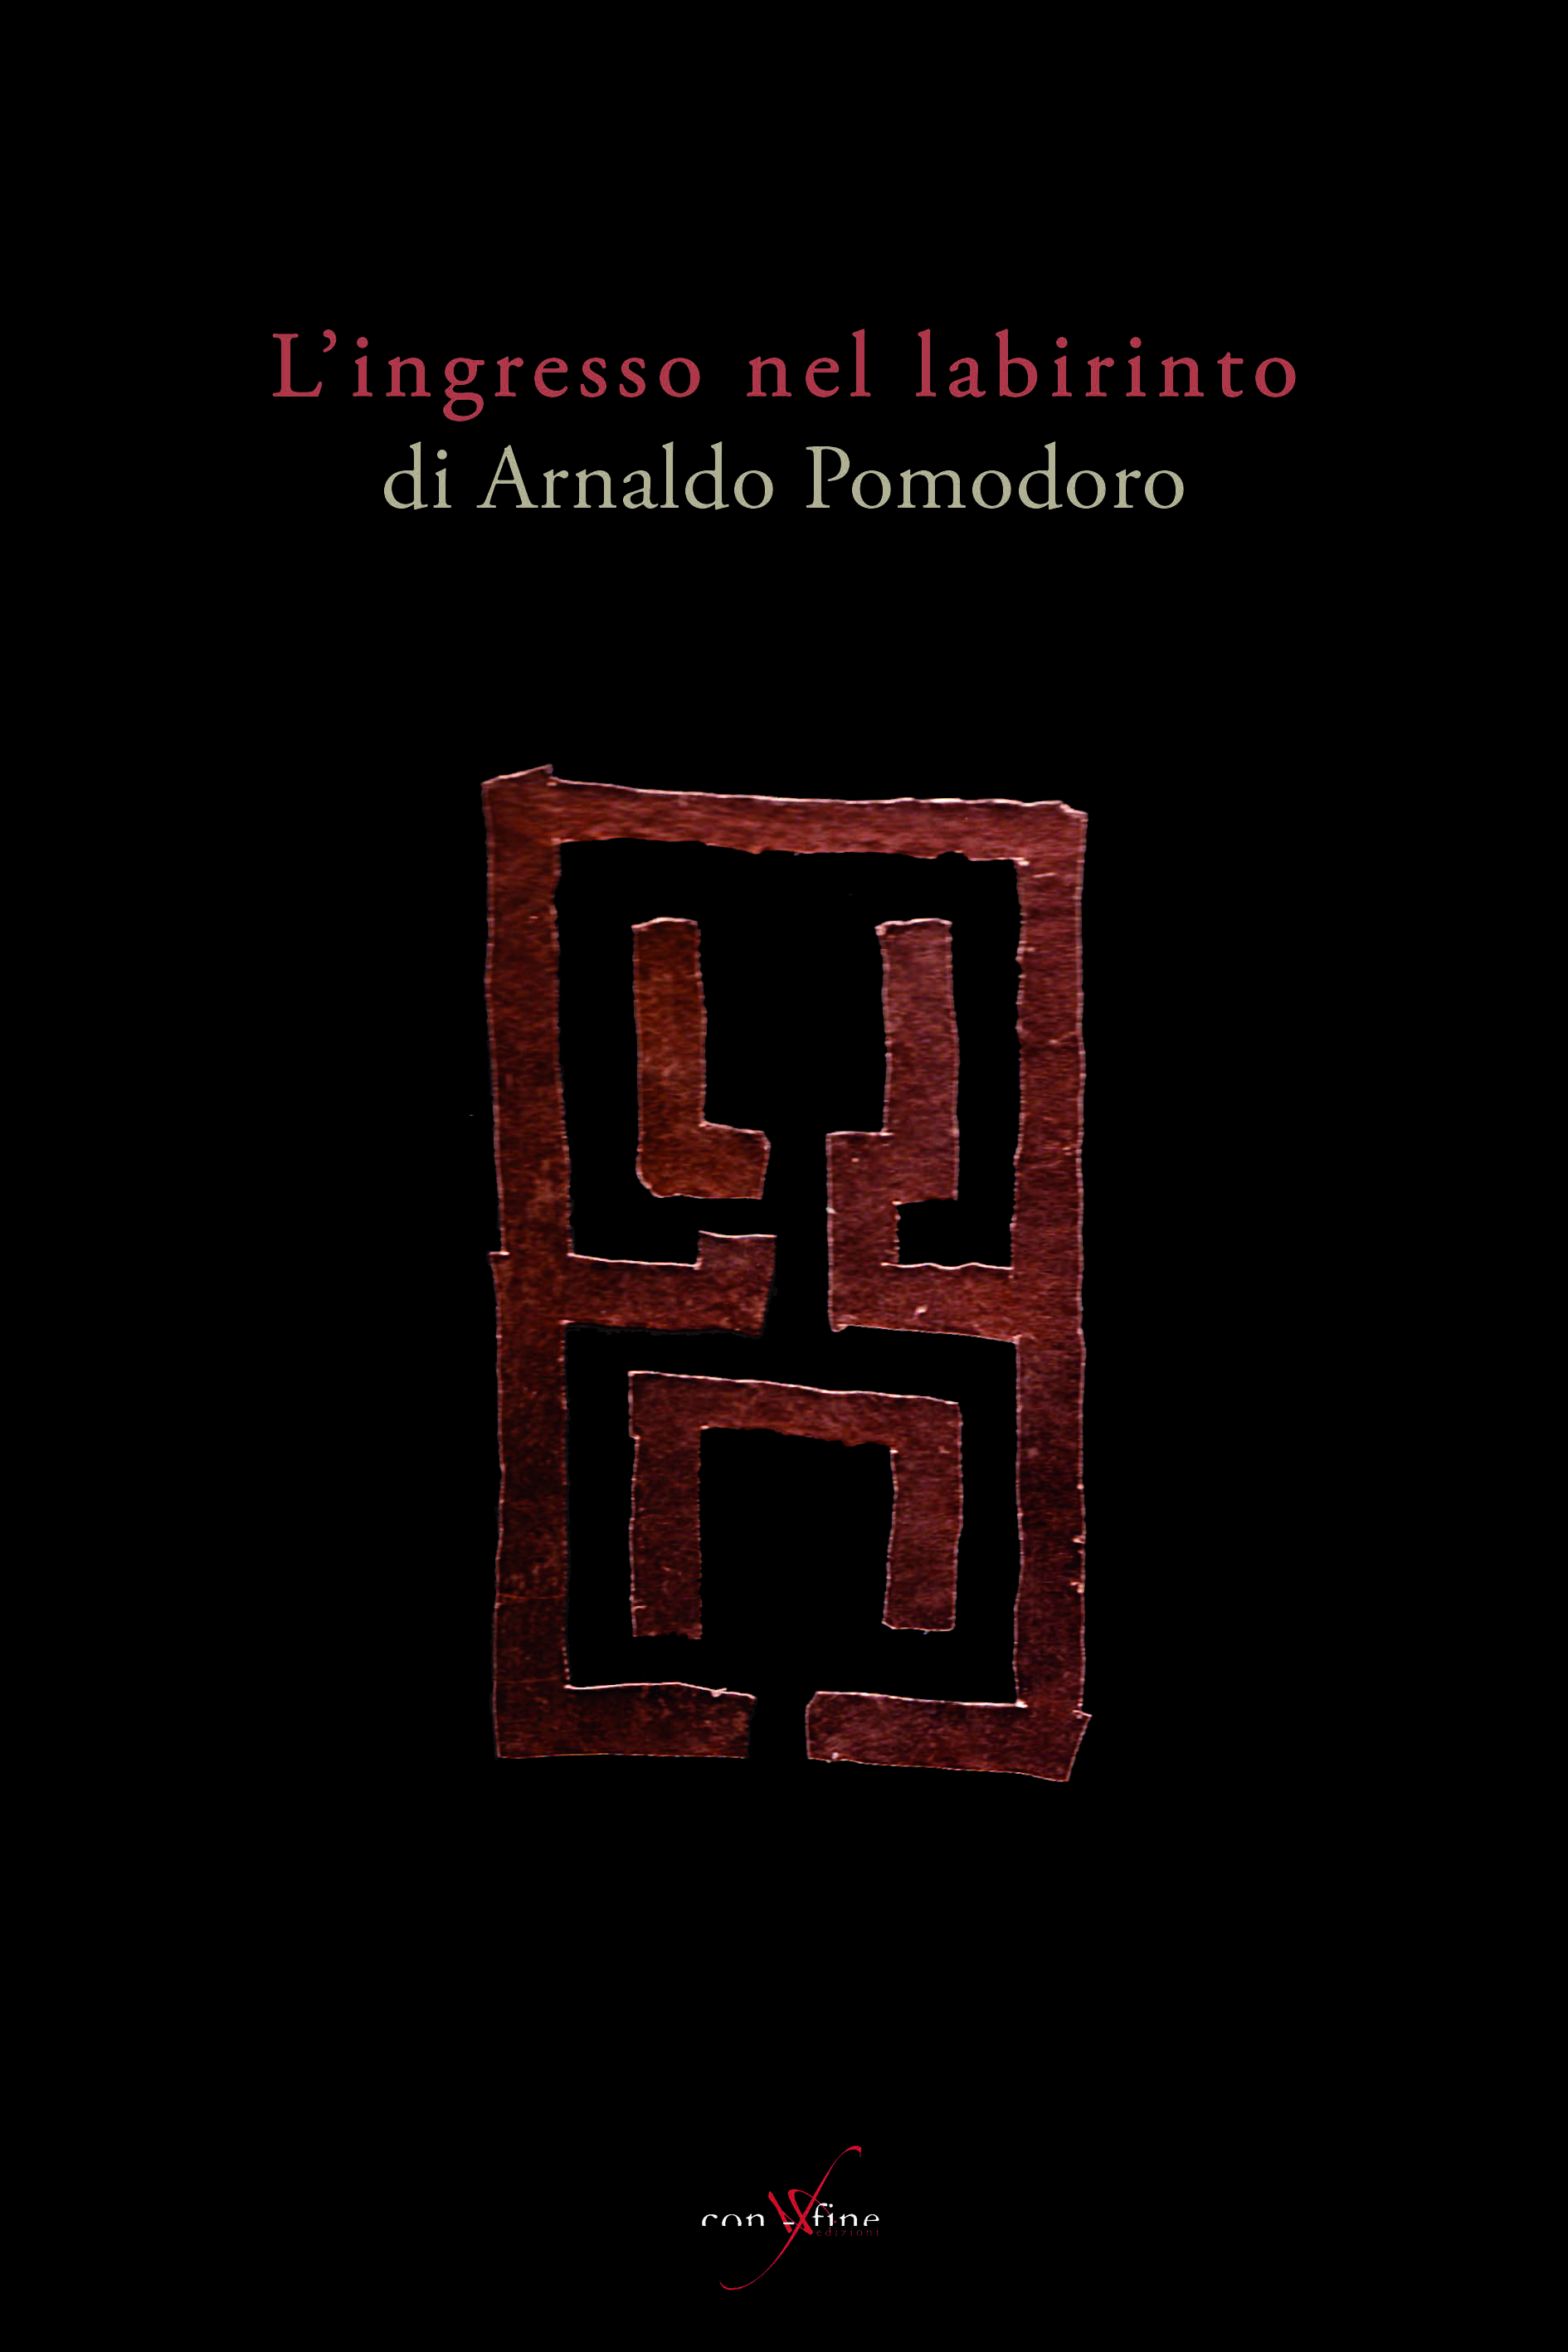 “L’ingresso nel labirinto di Arnaldo Pomodoro”, il libro di con-fine edizioni